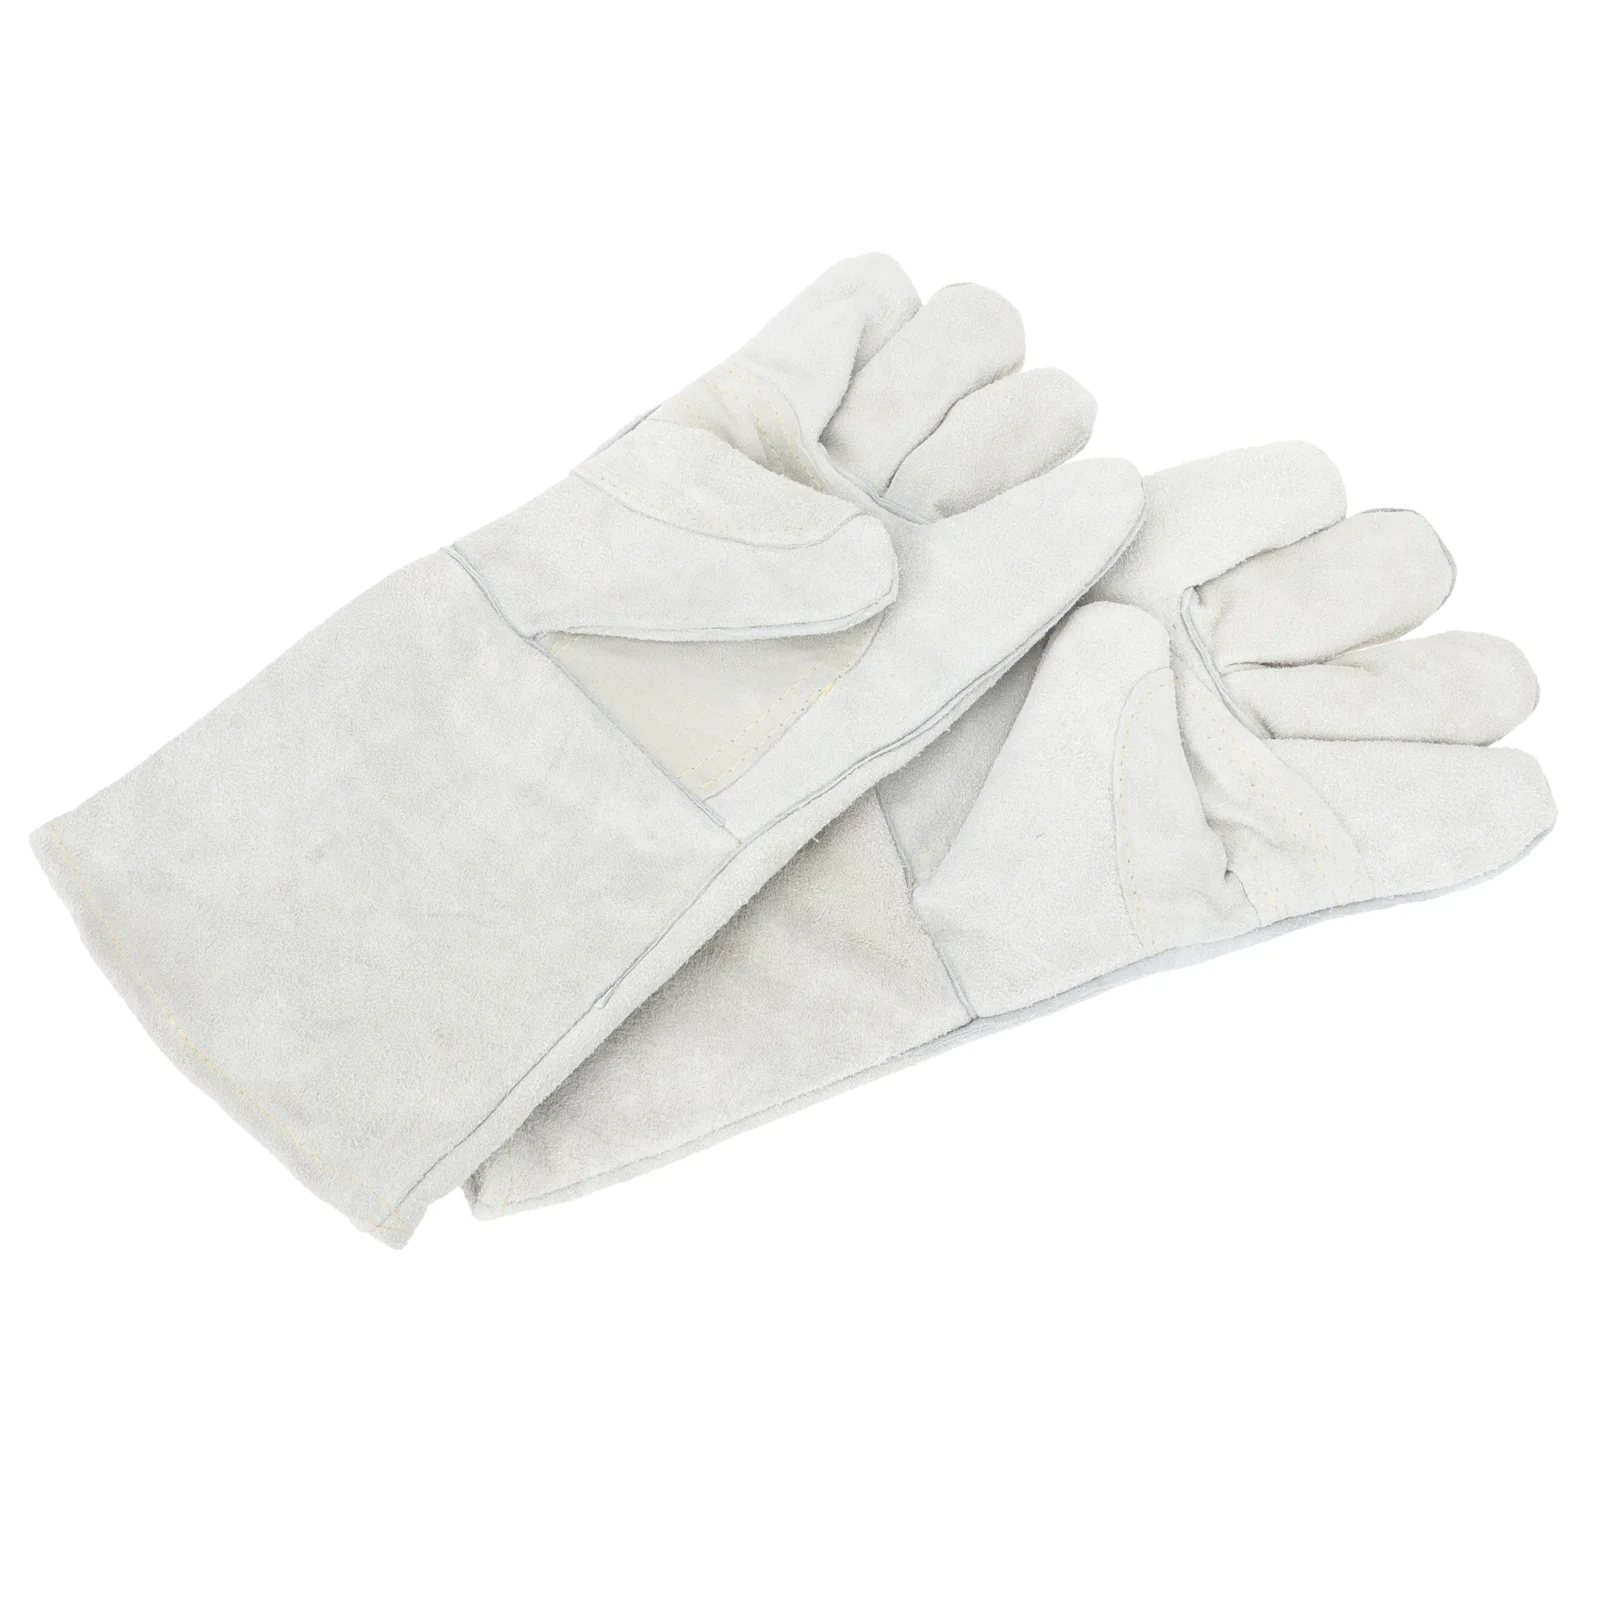 

Перчатки для барбекю и гриля, защитные варежки для сварки, специальные рабочие термостойкие варежки из воловьей кожи для мужчин